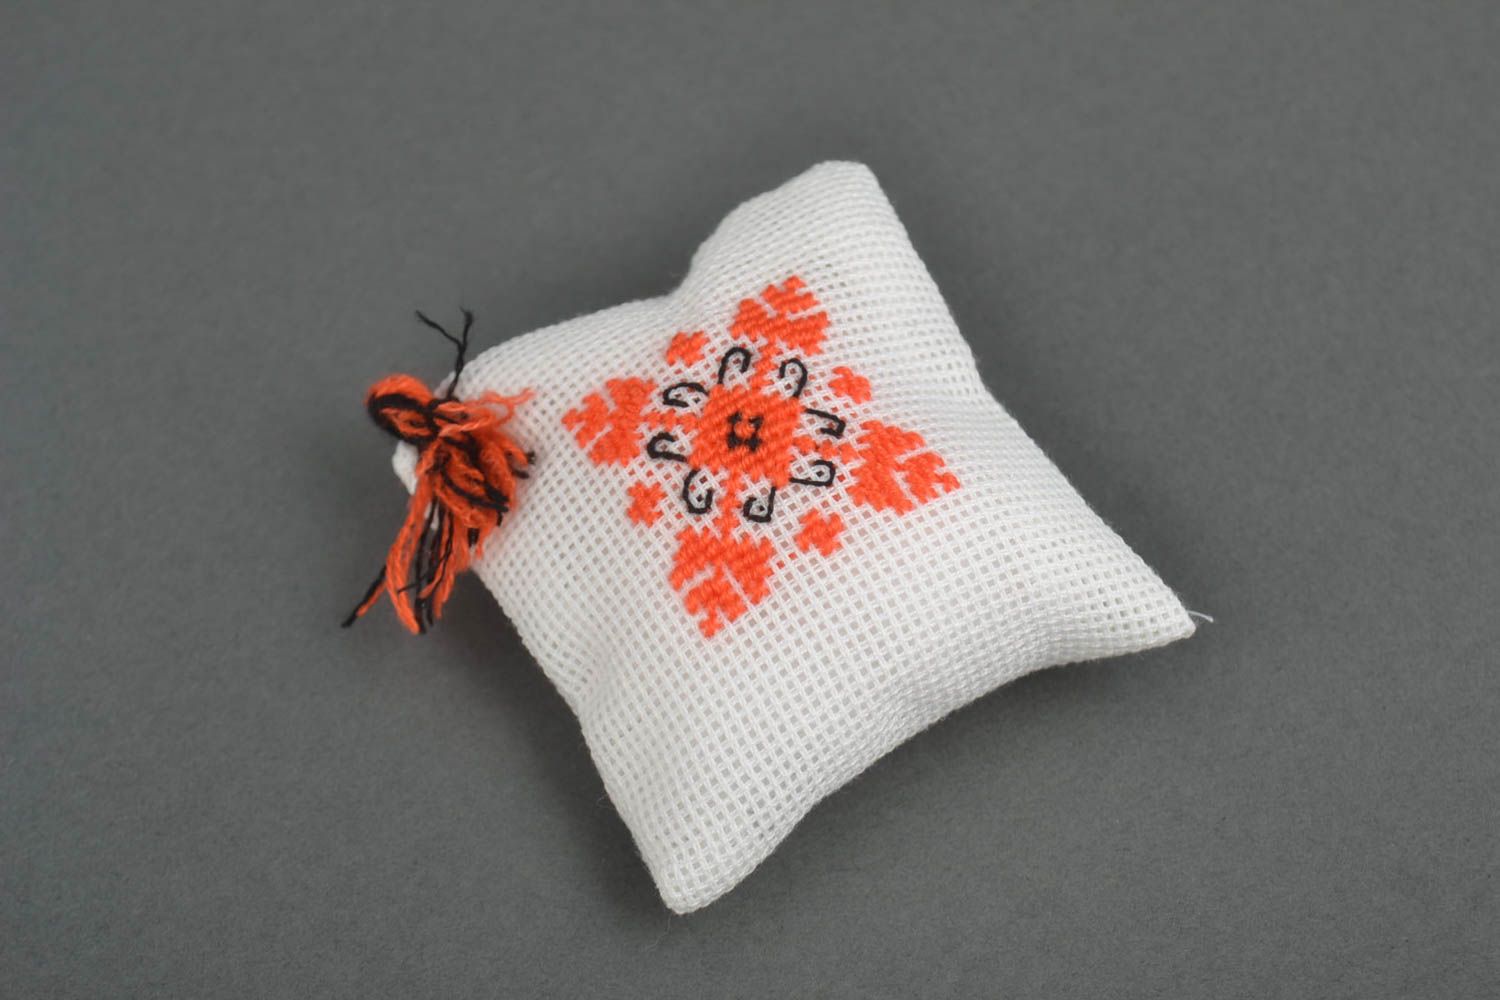 Pin cushion sewing accessories handmade home decor souvenir ideas home accents photo 5